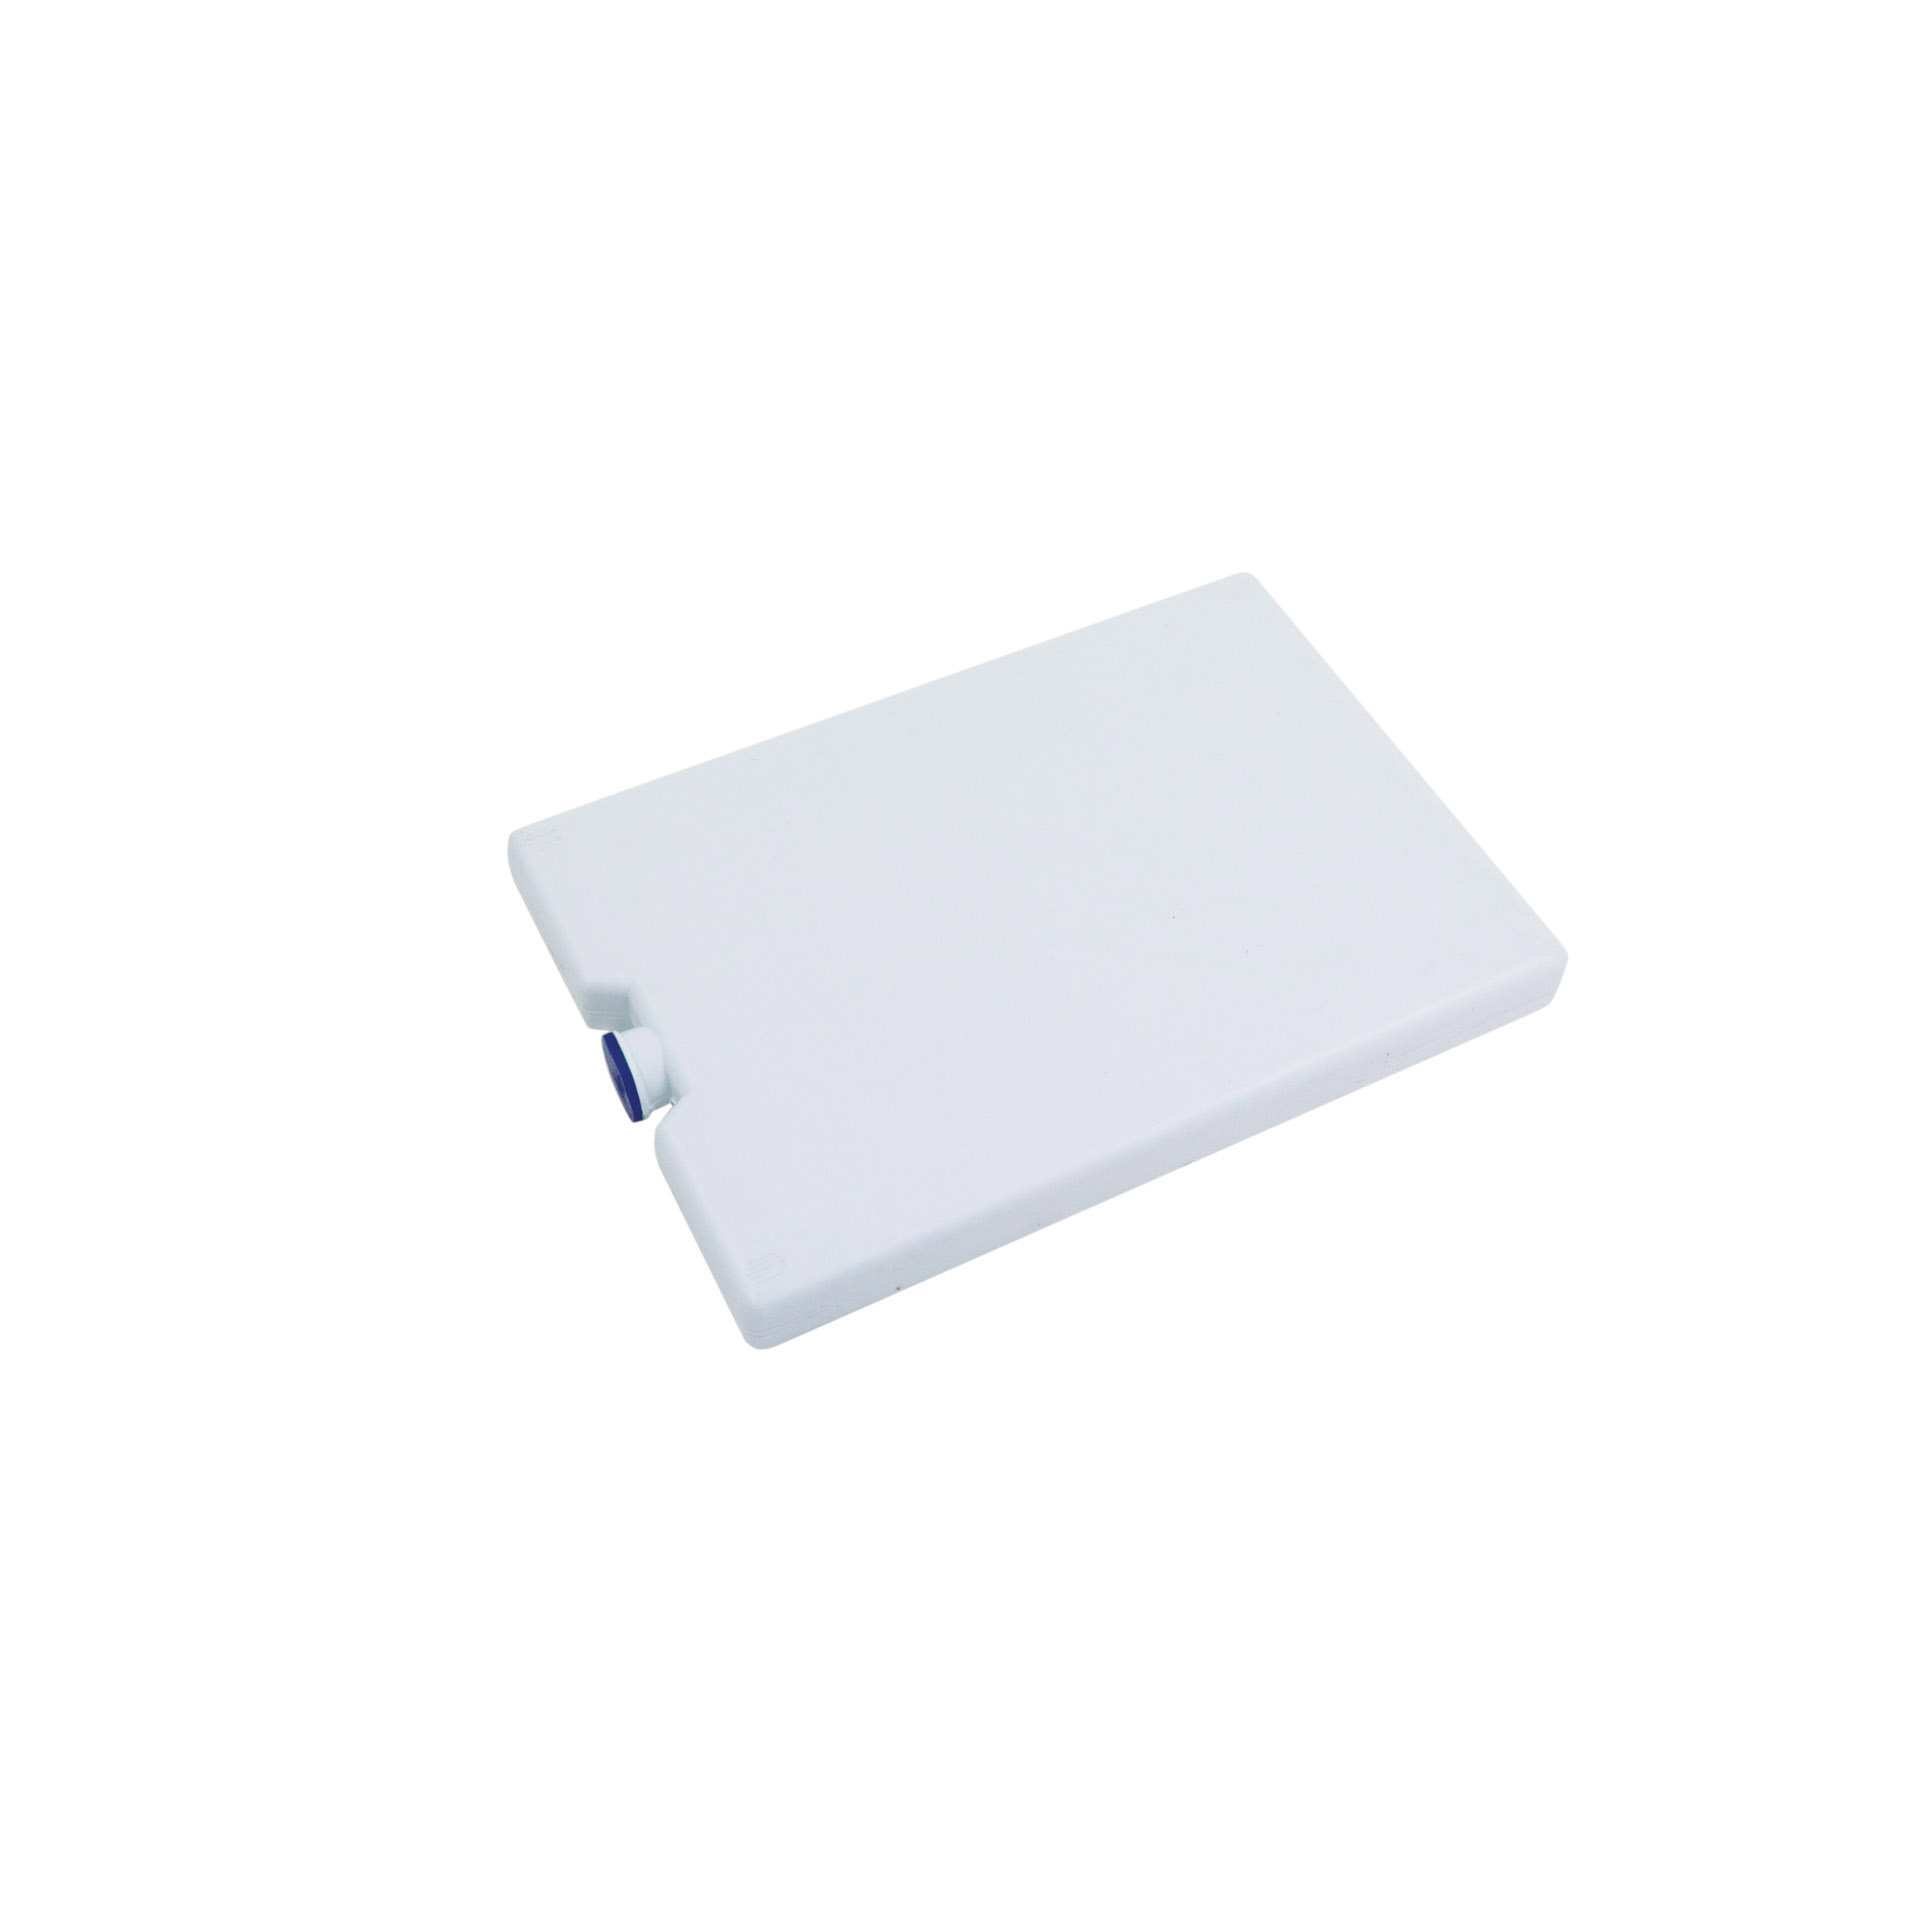 Kühlakku - für FRONT-BOX 60 x 40 - Abm. 20,0 x 14,0 x 2,0 cm - Polyethylen - 281040-C